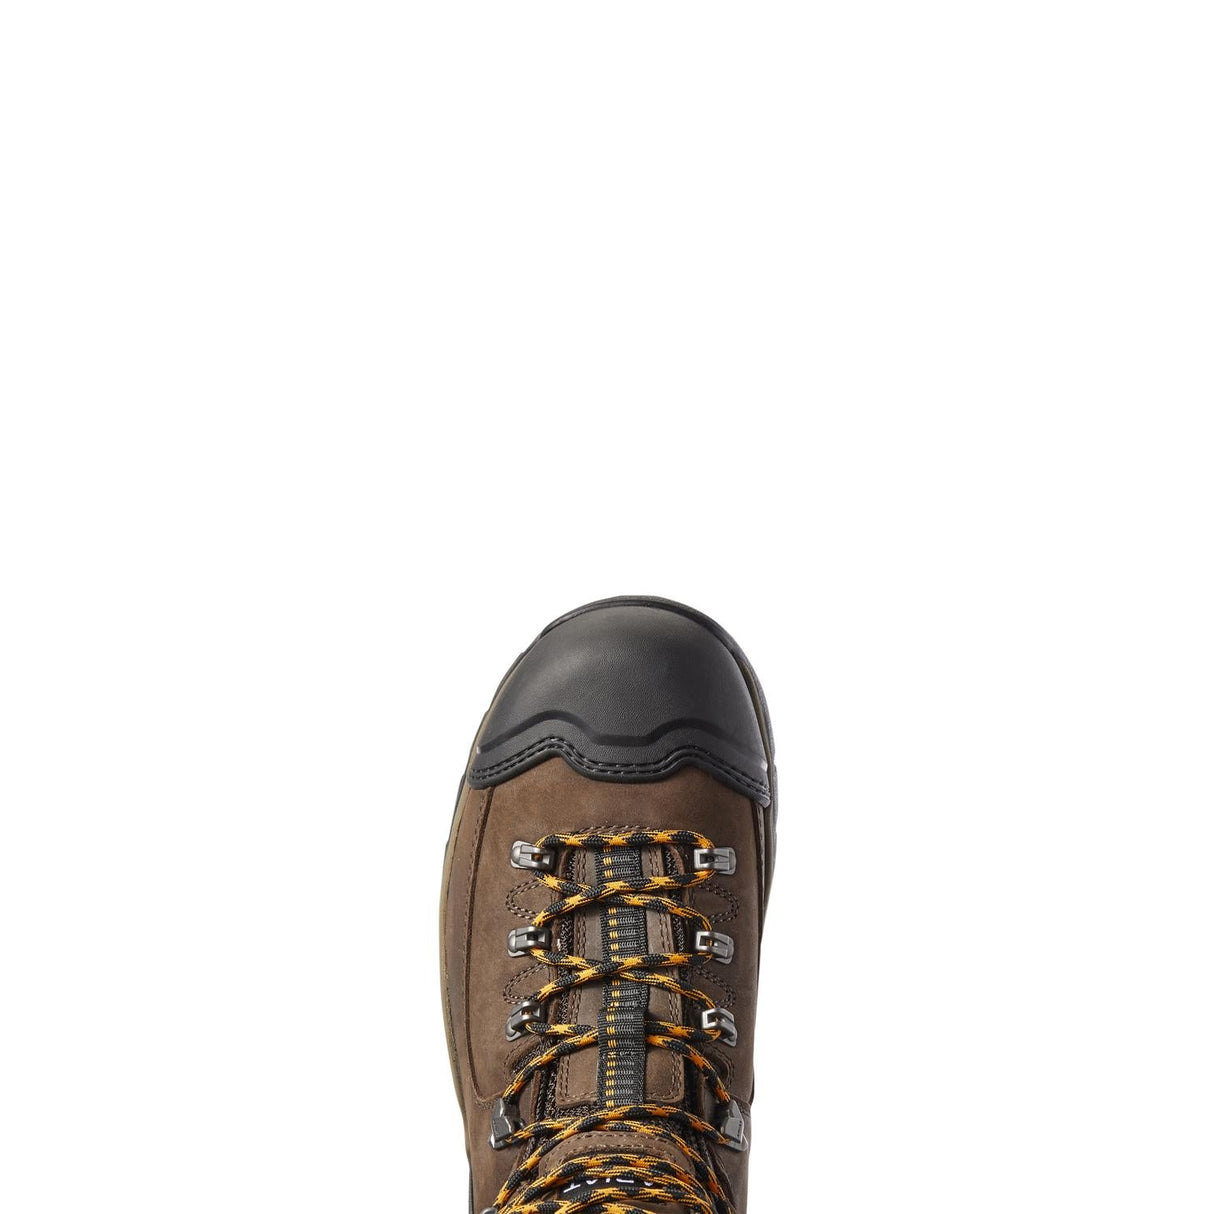 Ariat-Endeavor 6in Waterproof Work Boot Chocolate Brown-10031659-Steel Toes-5